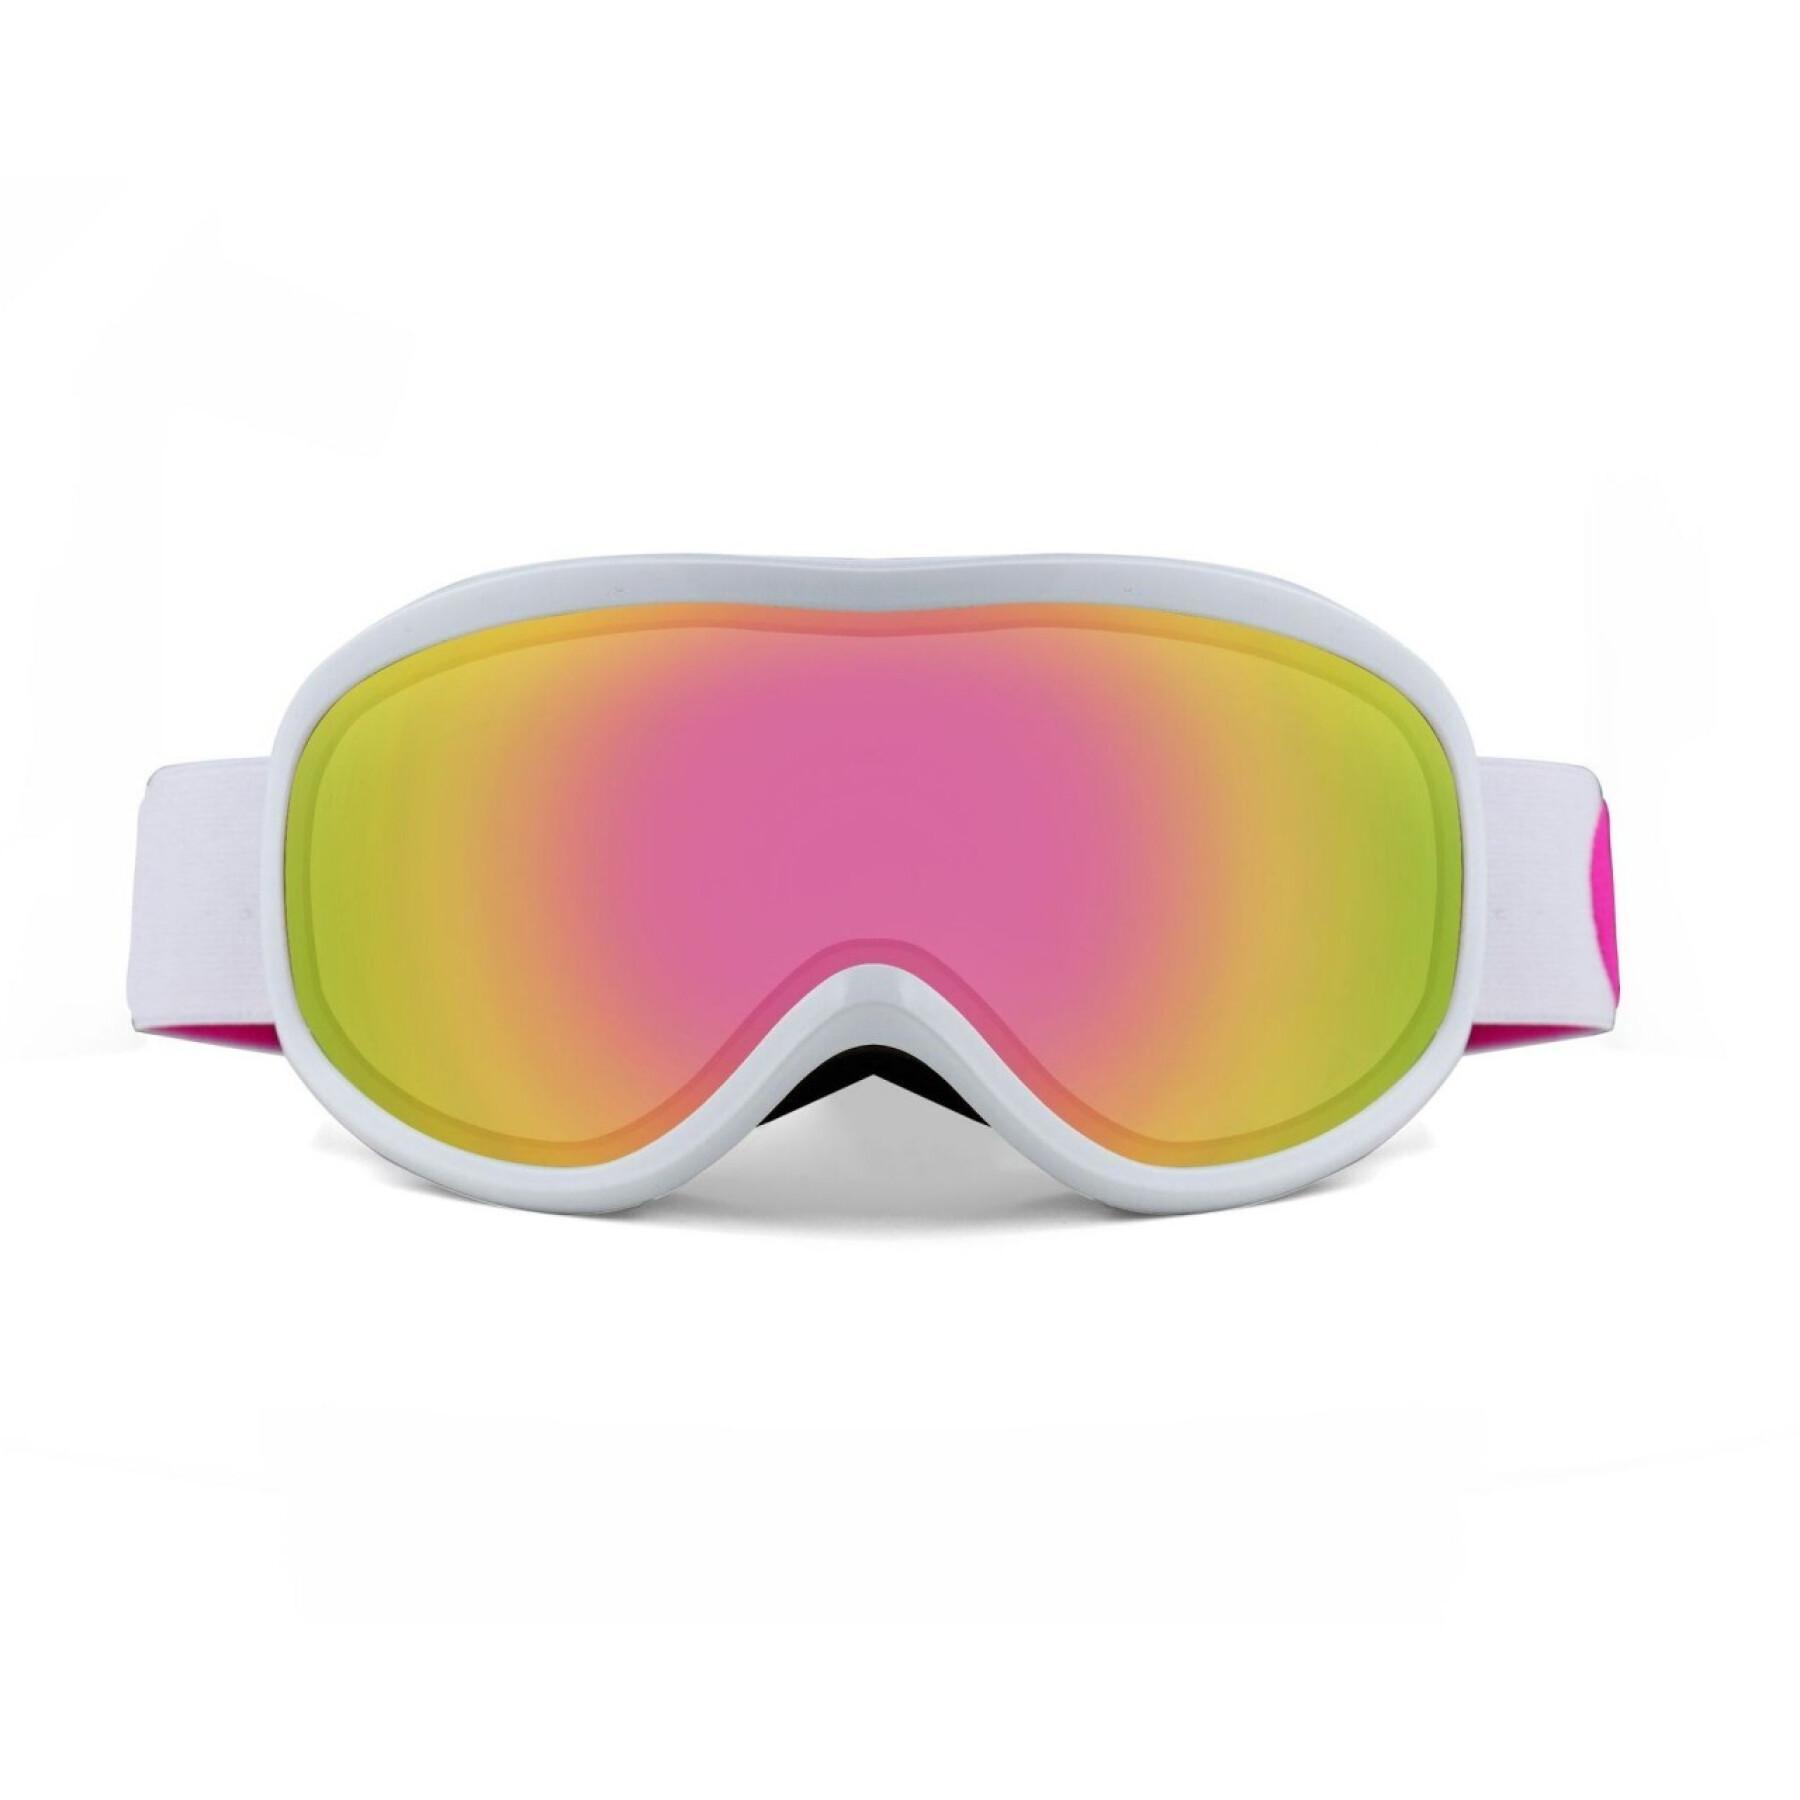 Gafas de esquí y snowboard Yeaz Steeze